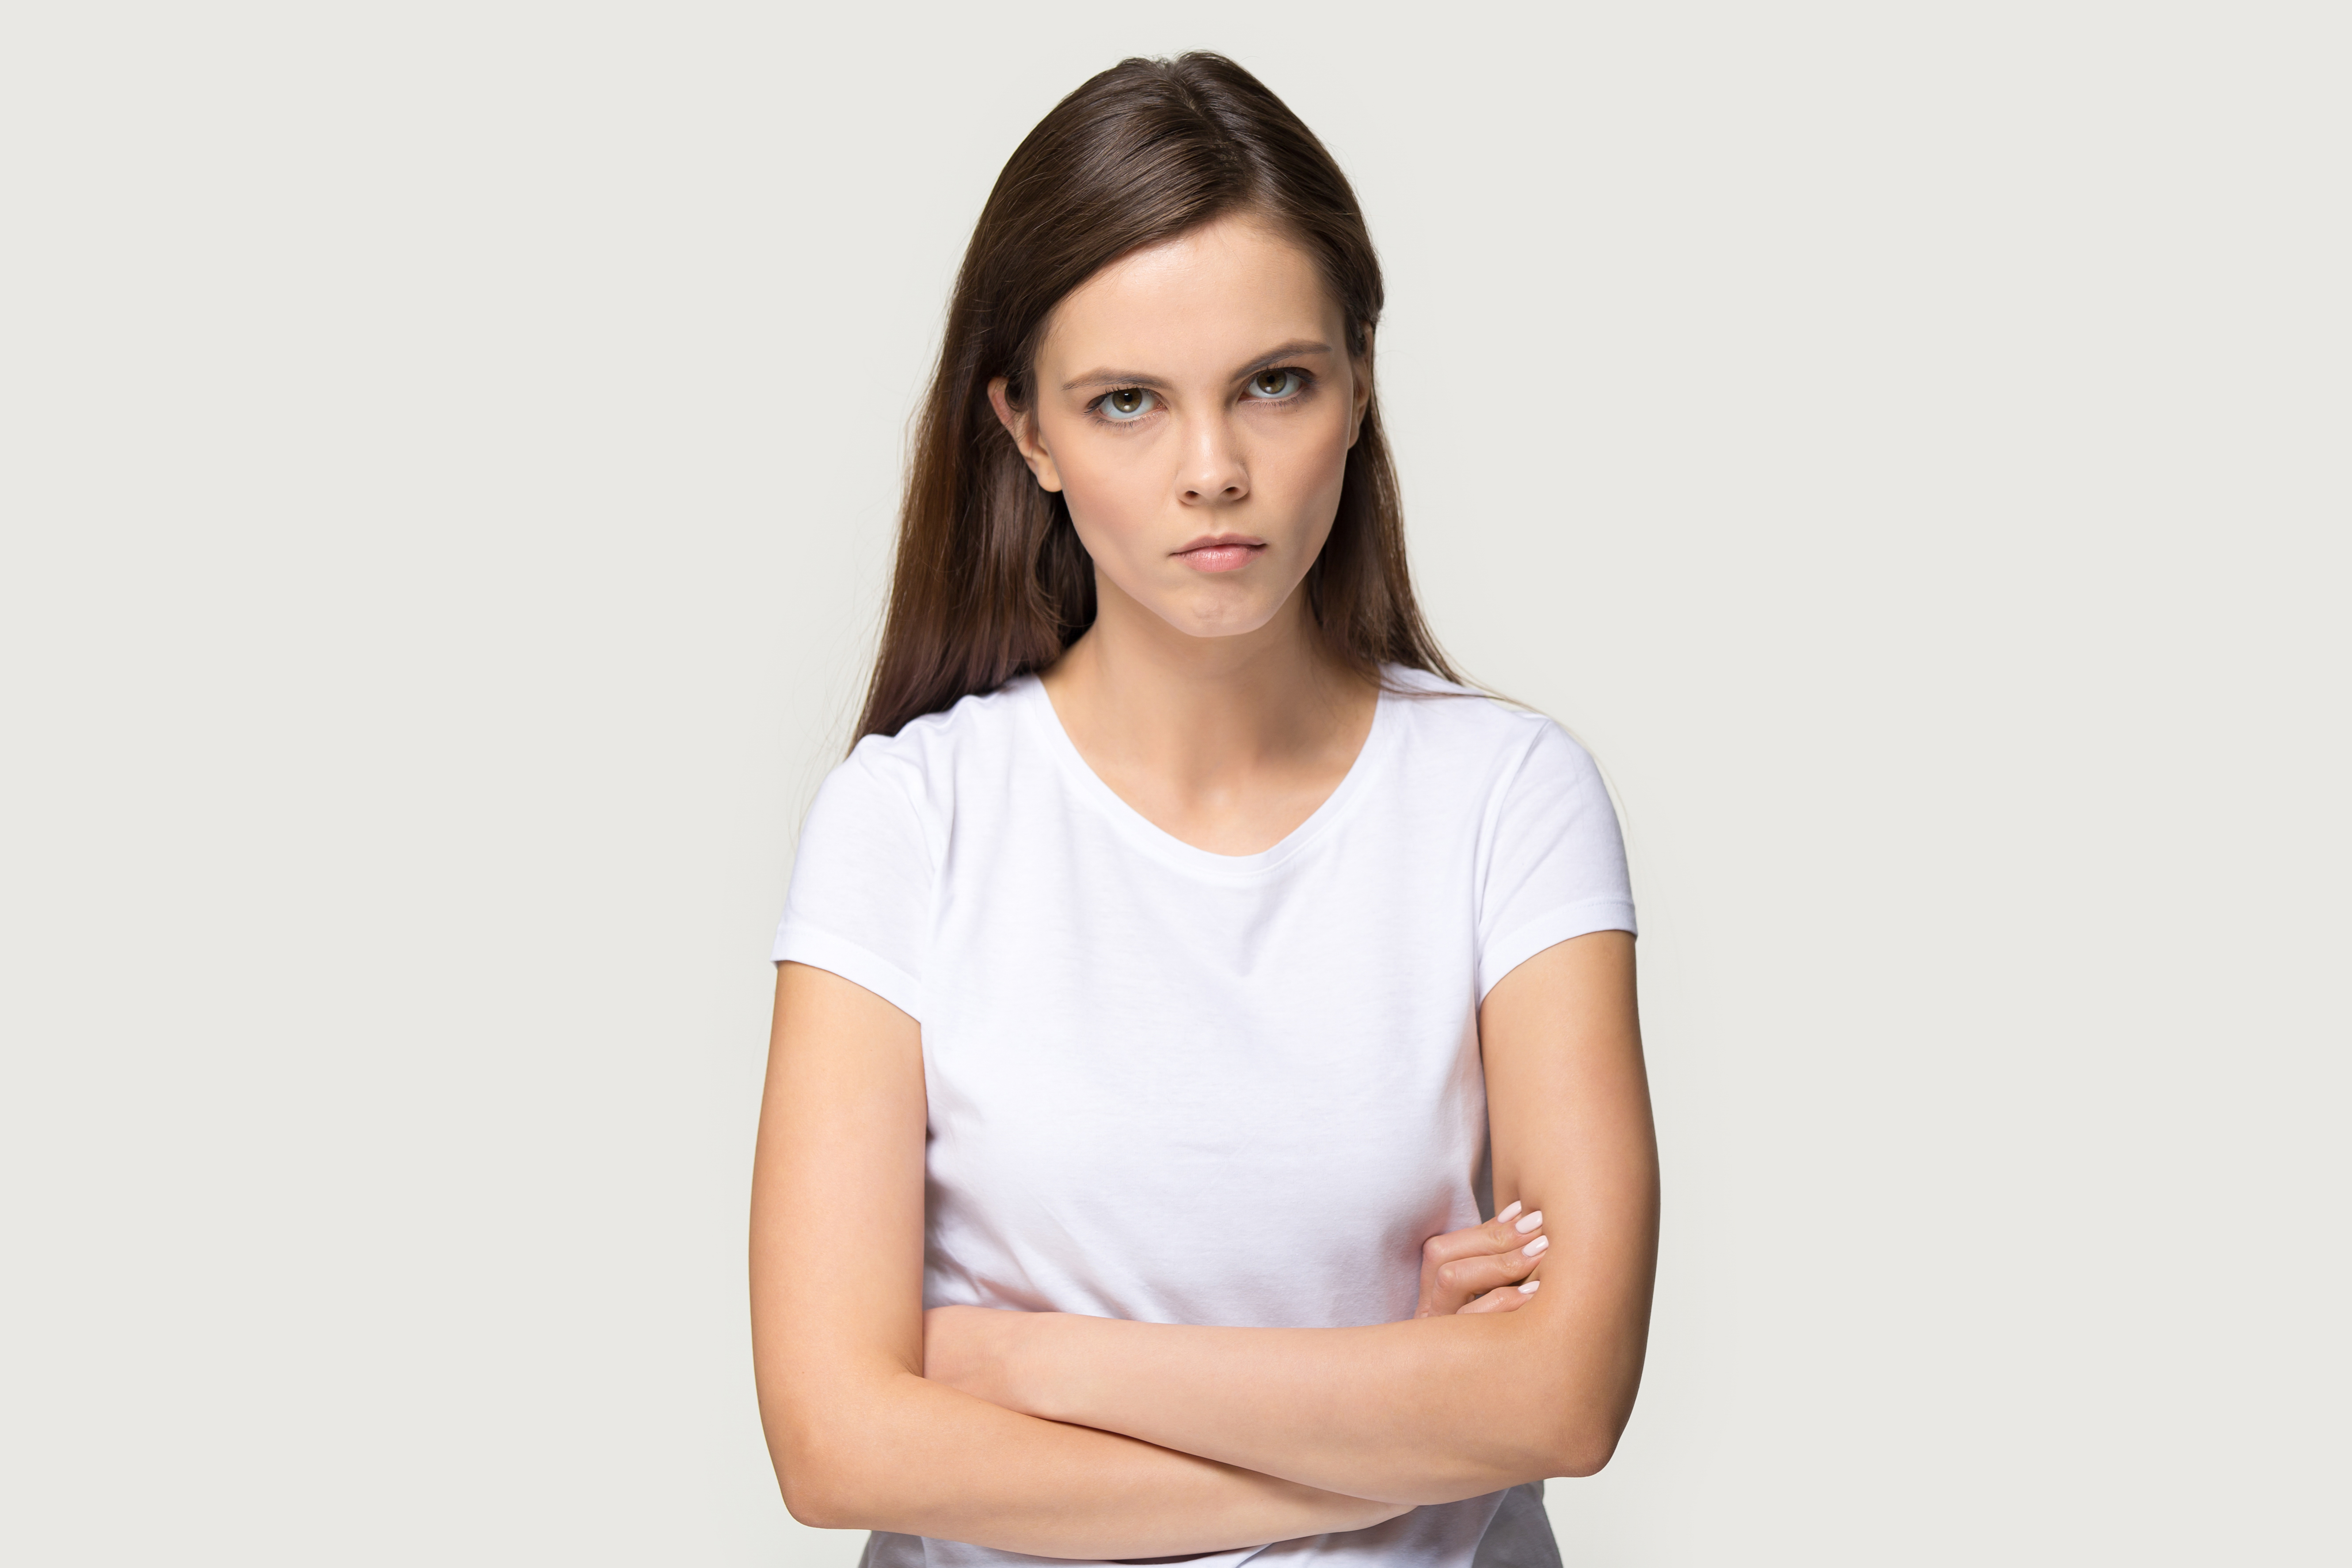 Ein junges Mädchen, das verärgert aussieht | Quelle: Shutterstock